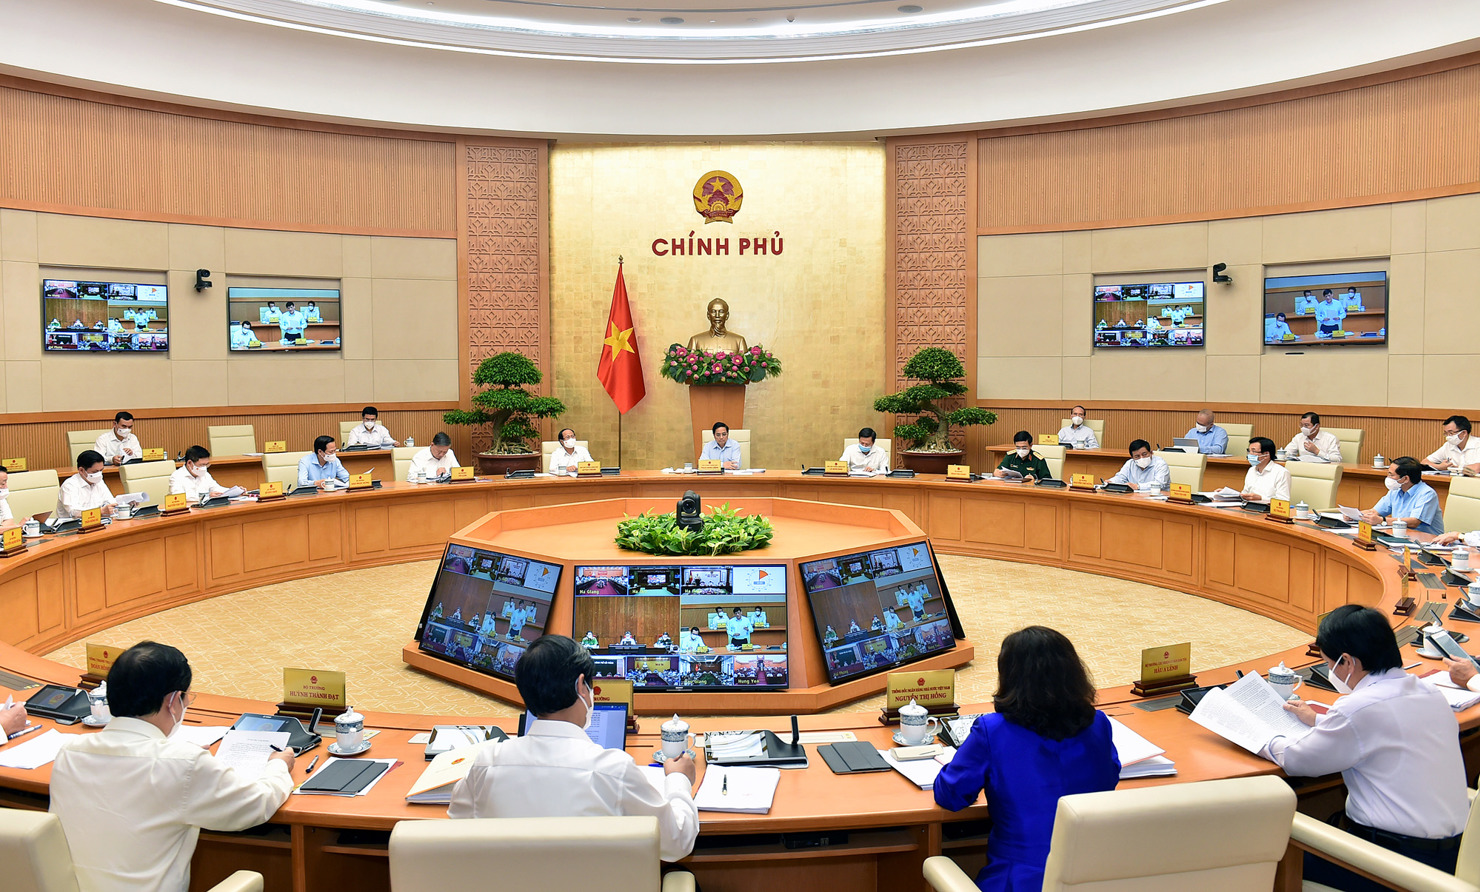 Thủ tướng Phạm Minh Chính sẽ chủ trì Phiên họp Chính phủ trực tuyến với các địa phương về tình hình phát triển kinh tế - xã hội tháng 7 và 7 tháng đầu năm 2021, công tác phòng chống dịch COVID-19 và nhiệm vụ, giải pháp trọng tâm những tháng cuối năm.